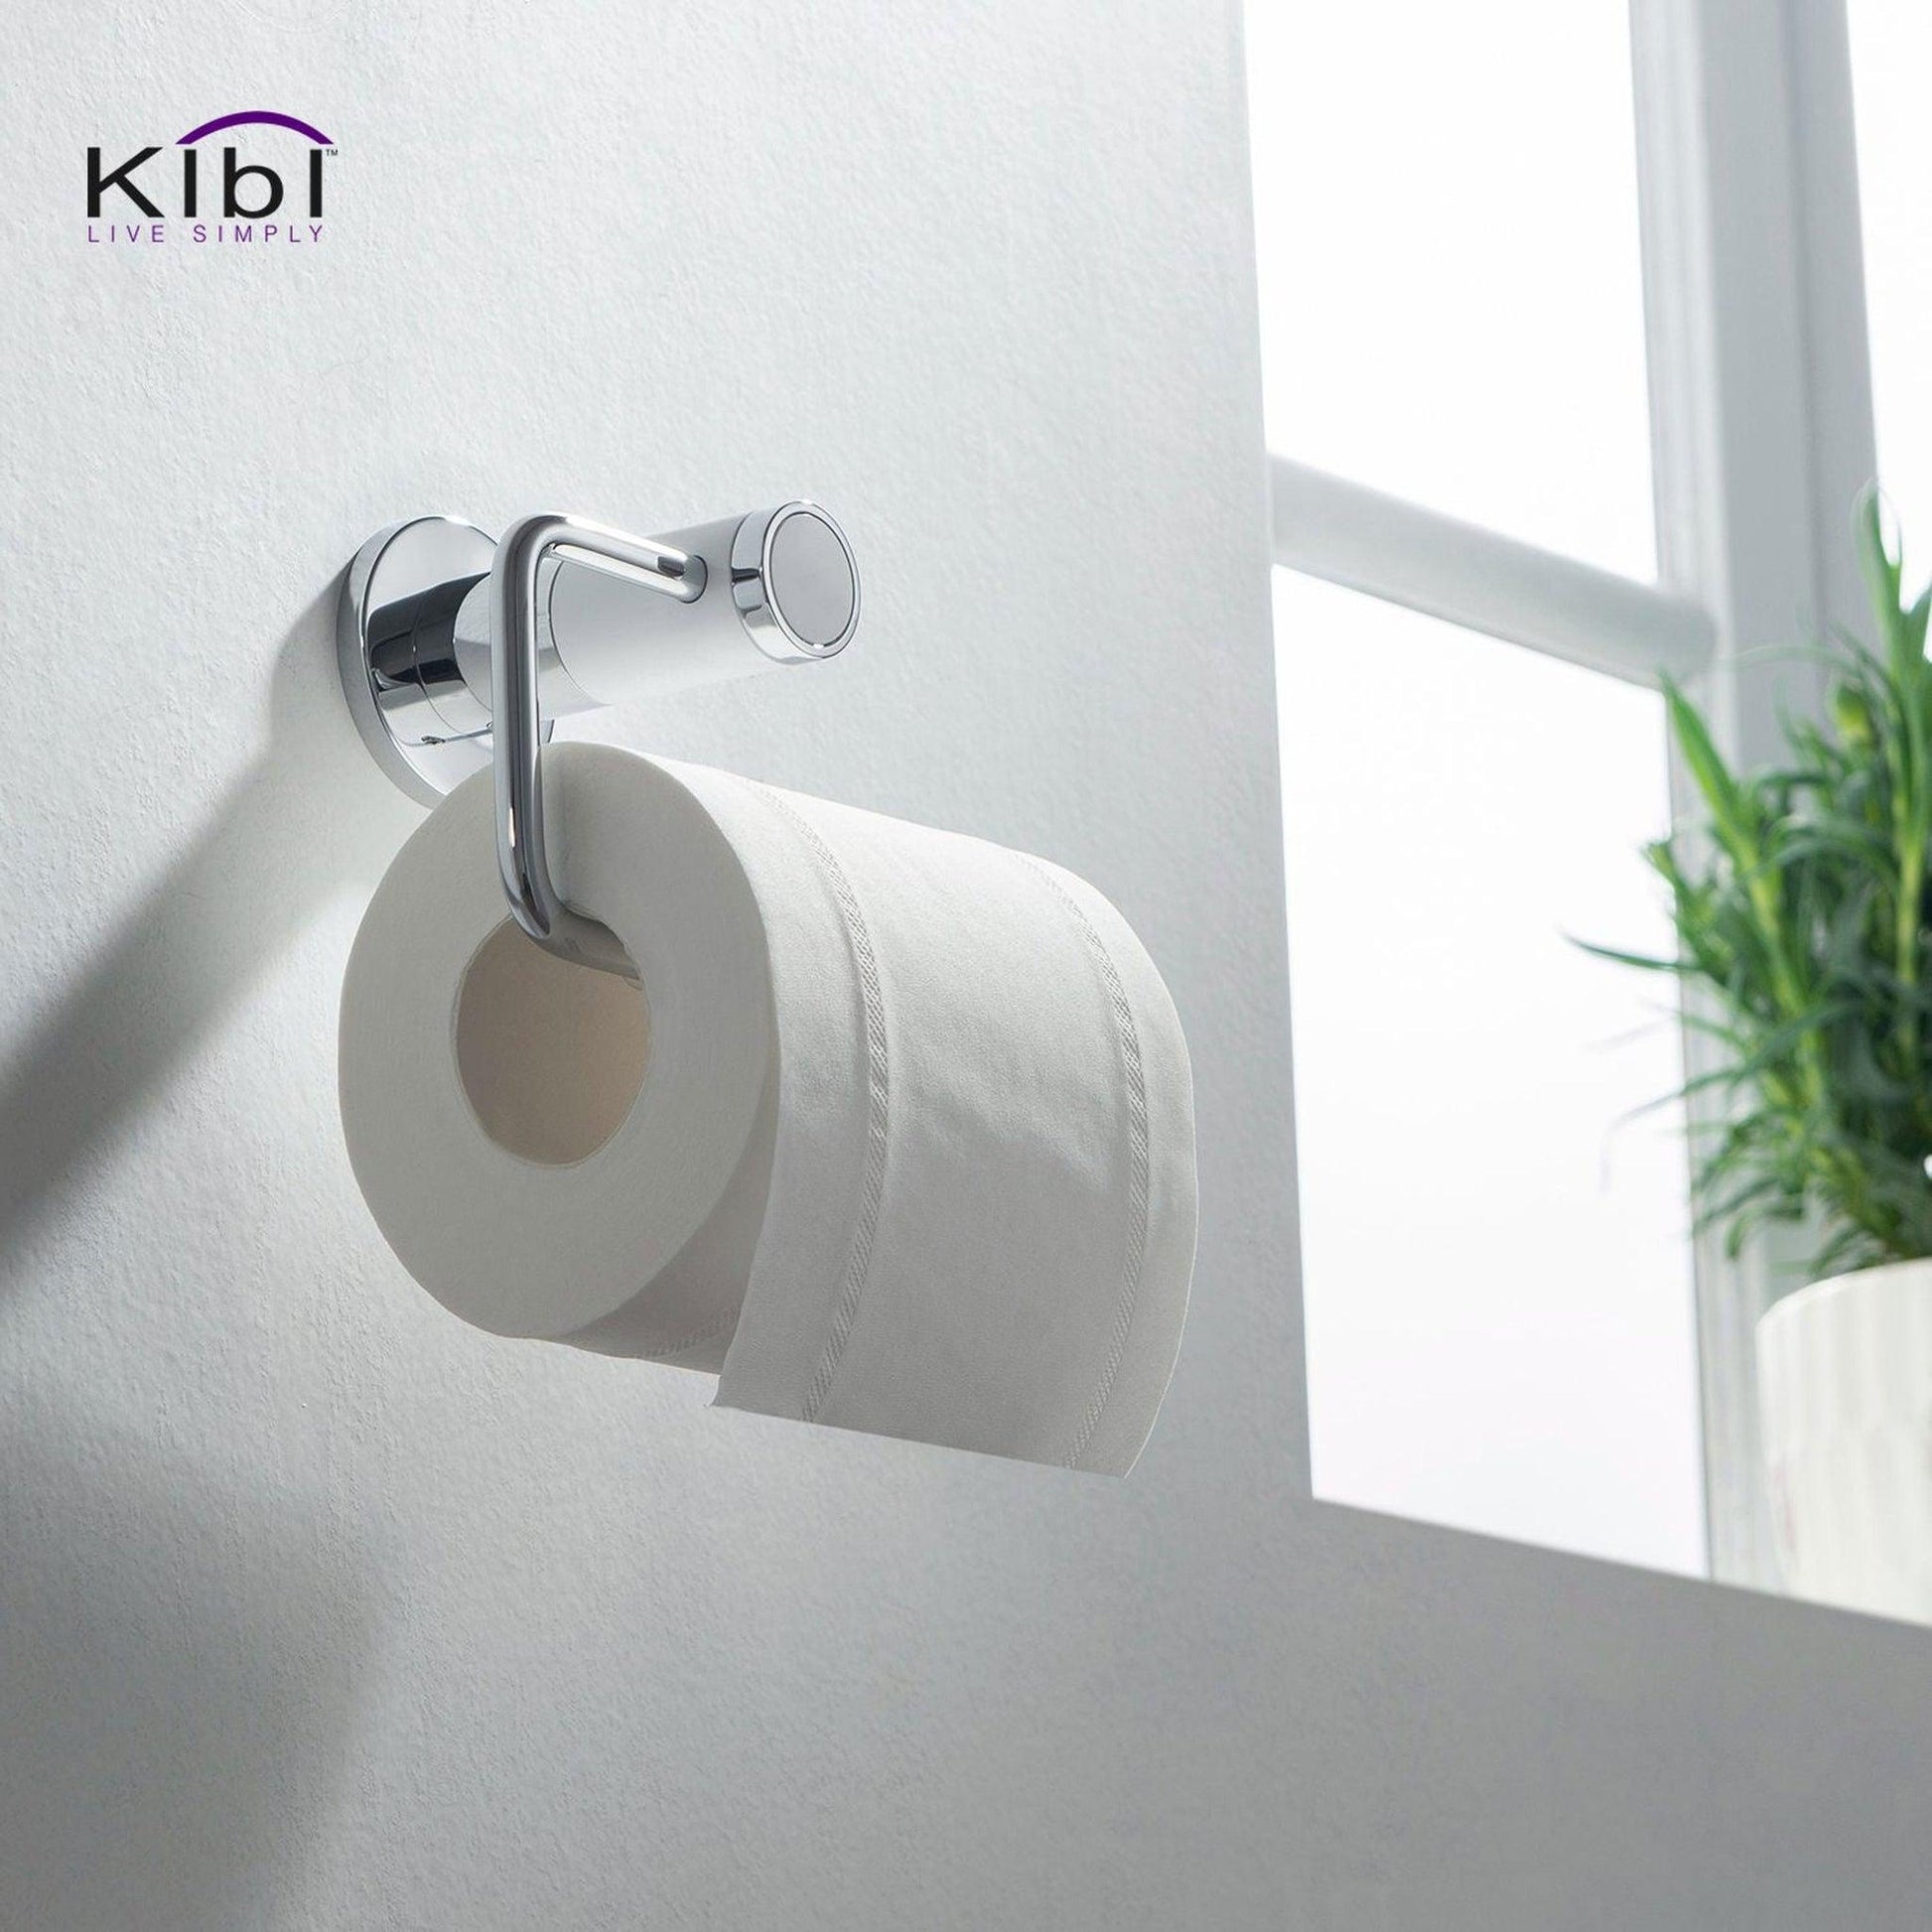 KIBI Abaco Bathroom Tissue Holder in Chrome White Finish